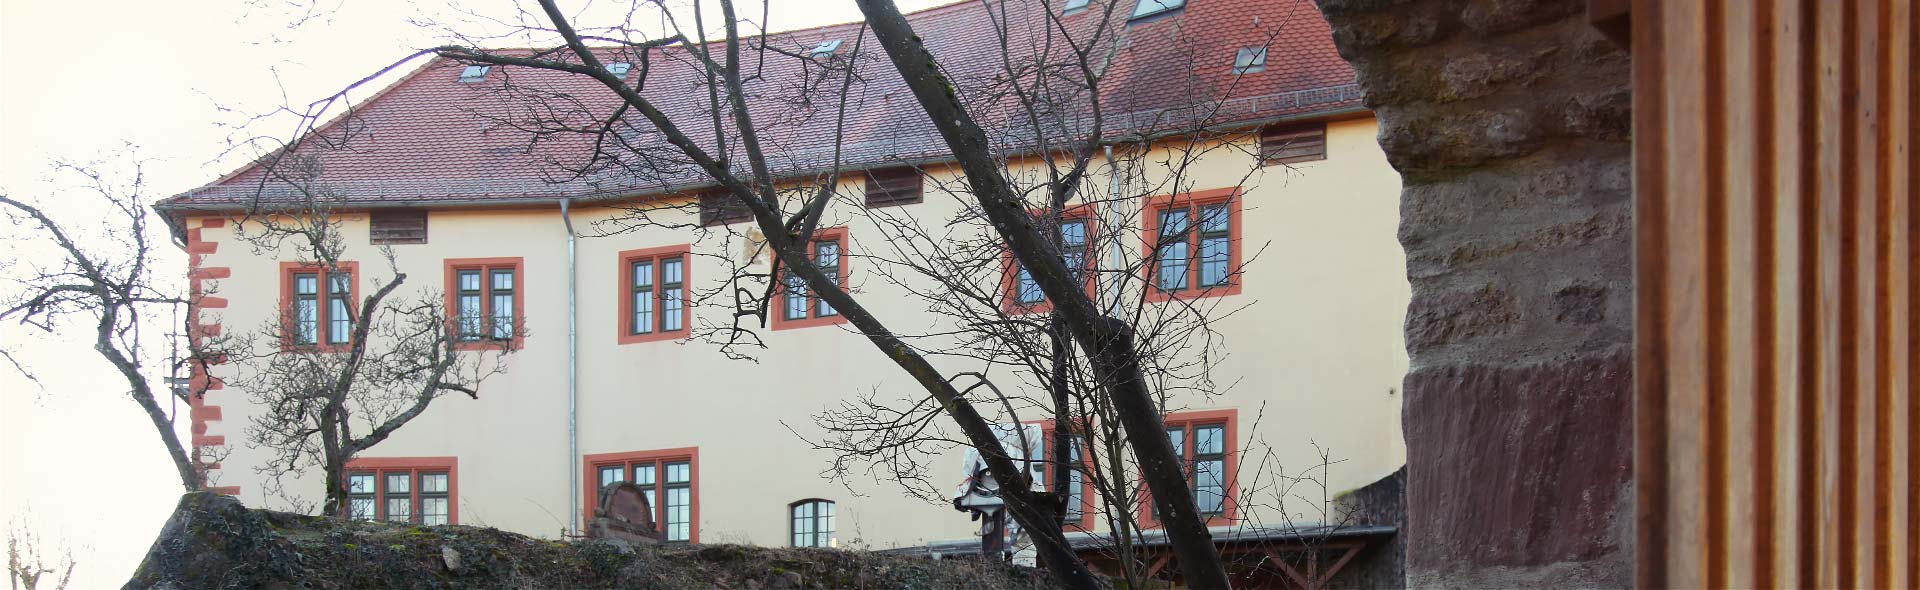 Schloss Reichenberg: Anfrage-Raumvermietung. Die Burg neben der Schlosskapelle